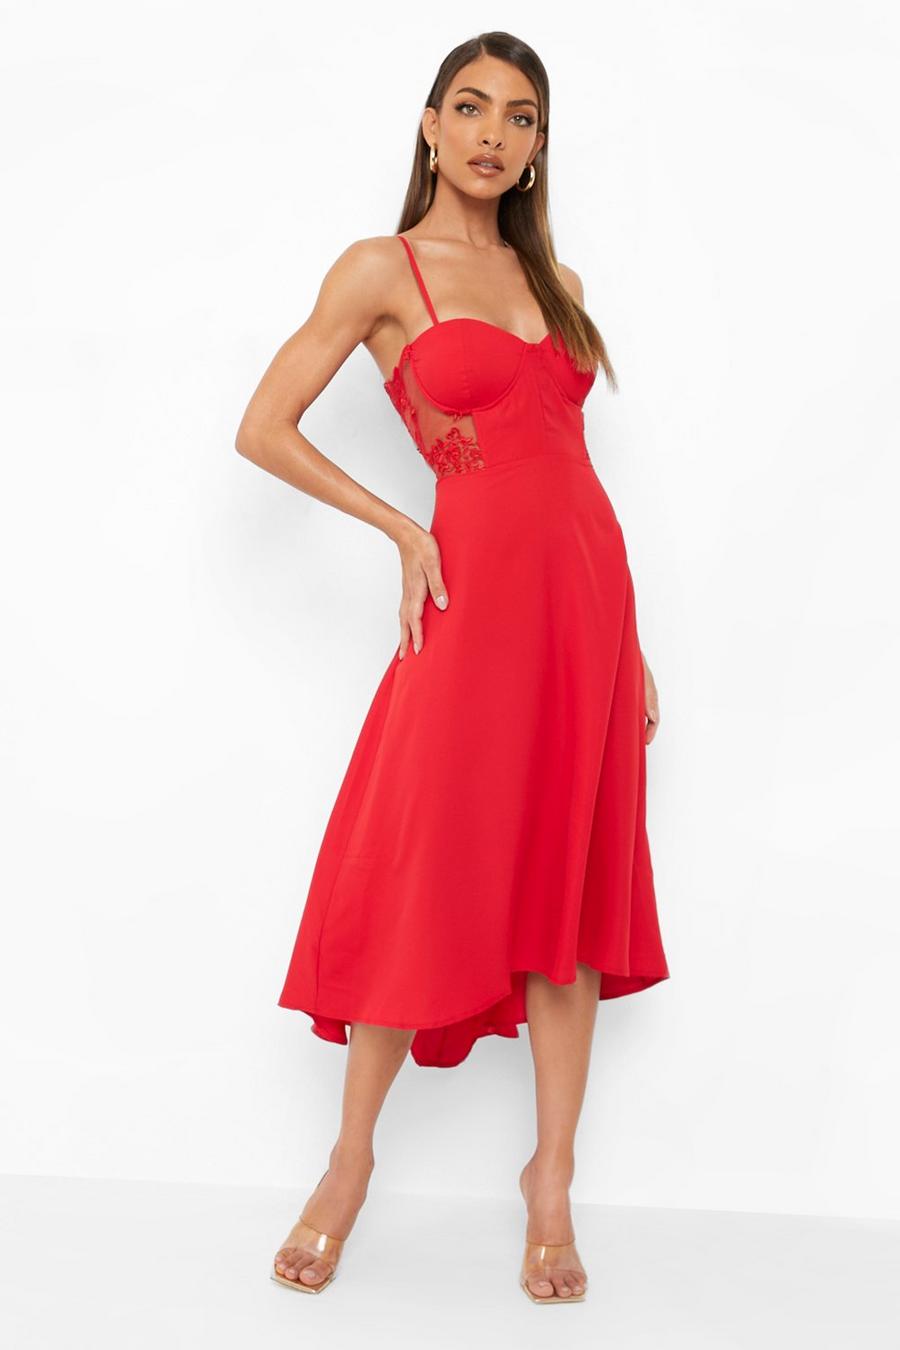 אדום rosso שמלת מידי עם מחוך תחרה בצבע מנוגד